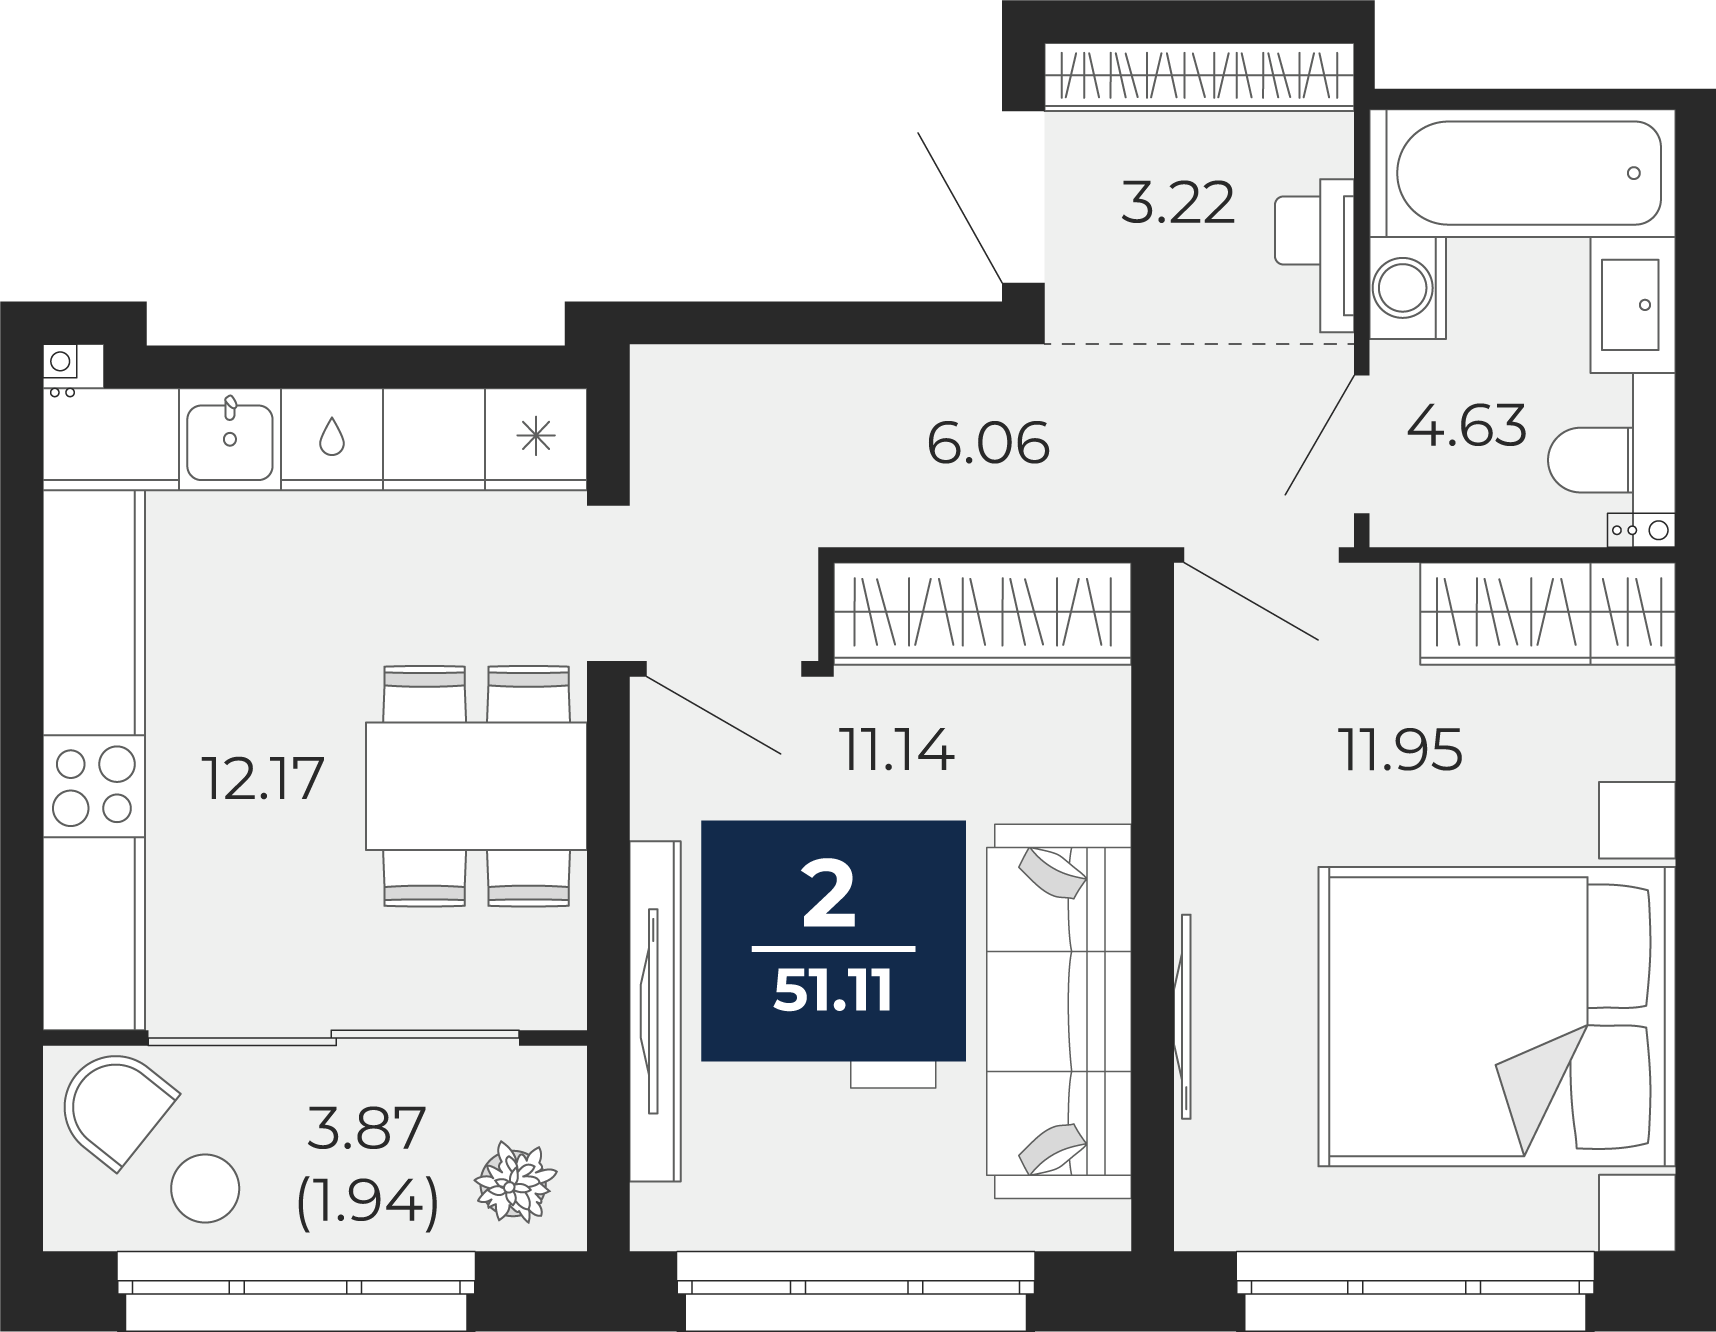 Квартира № 9, 2-комнатная, 51.11 кв. м, 3 этаж